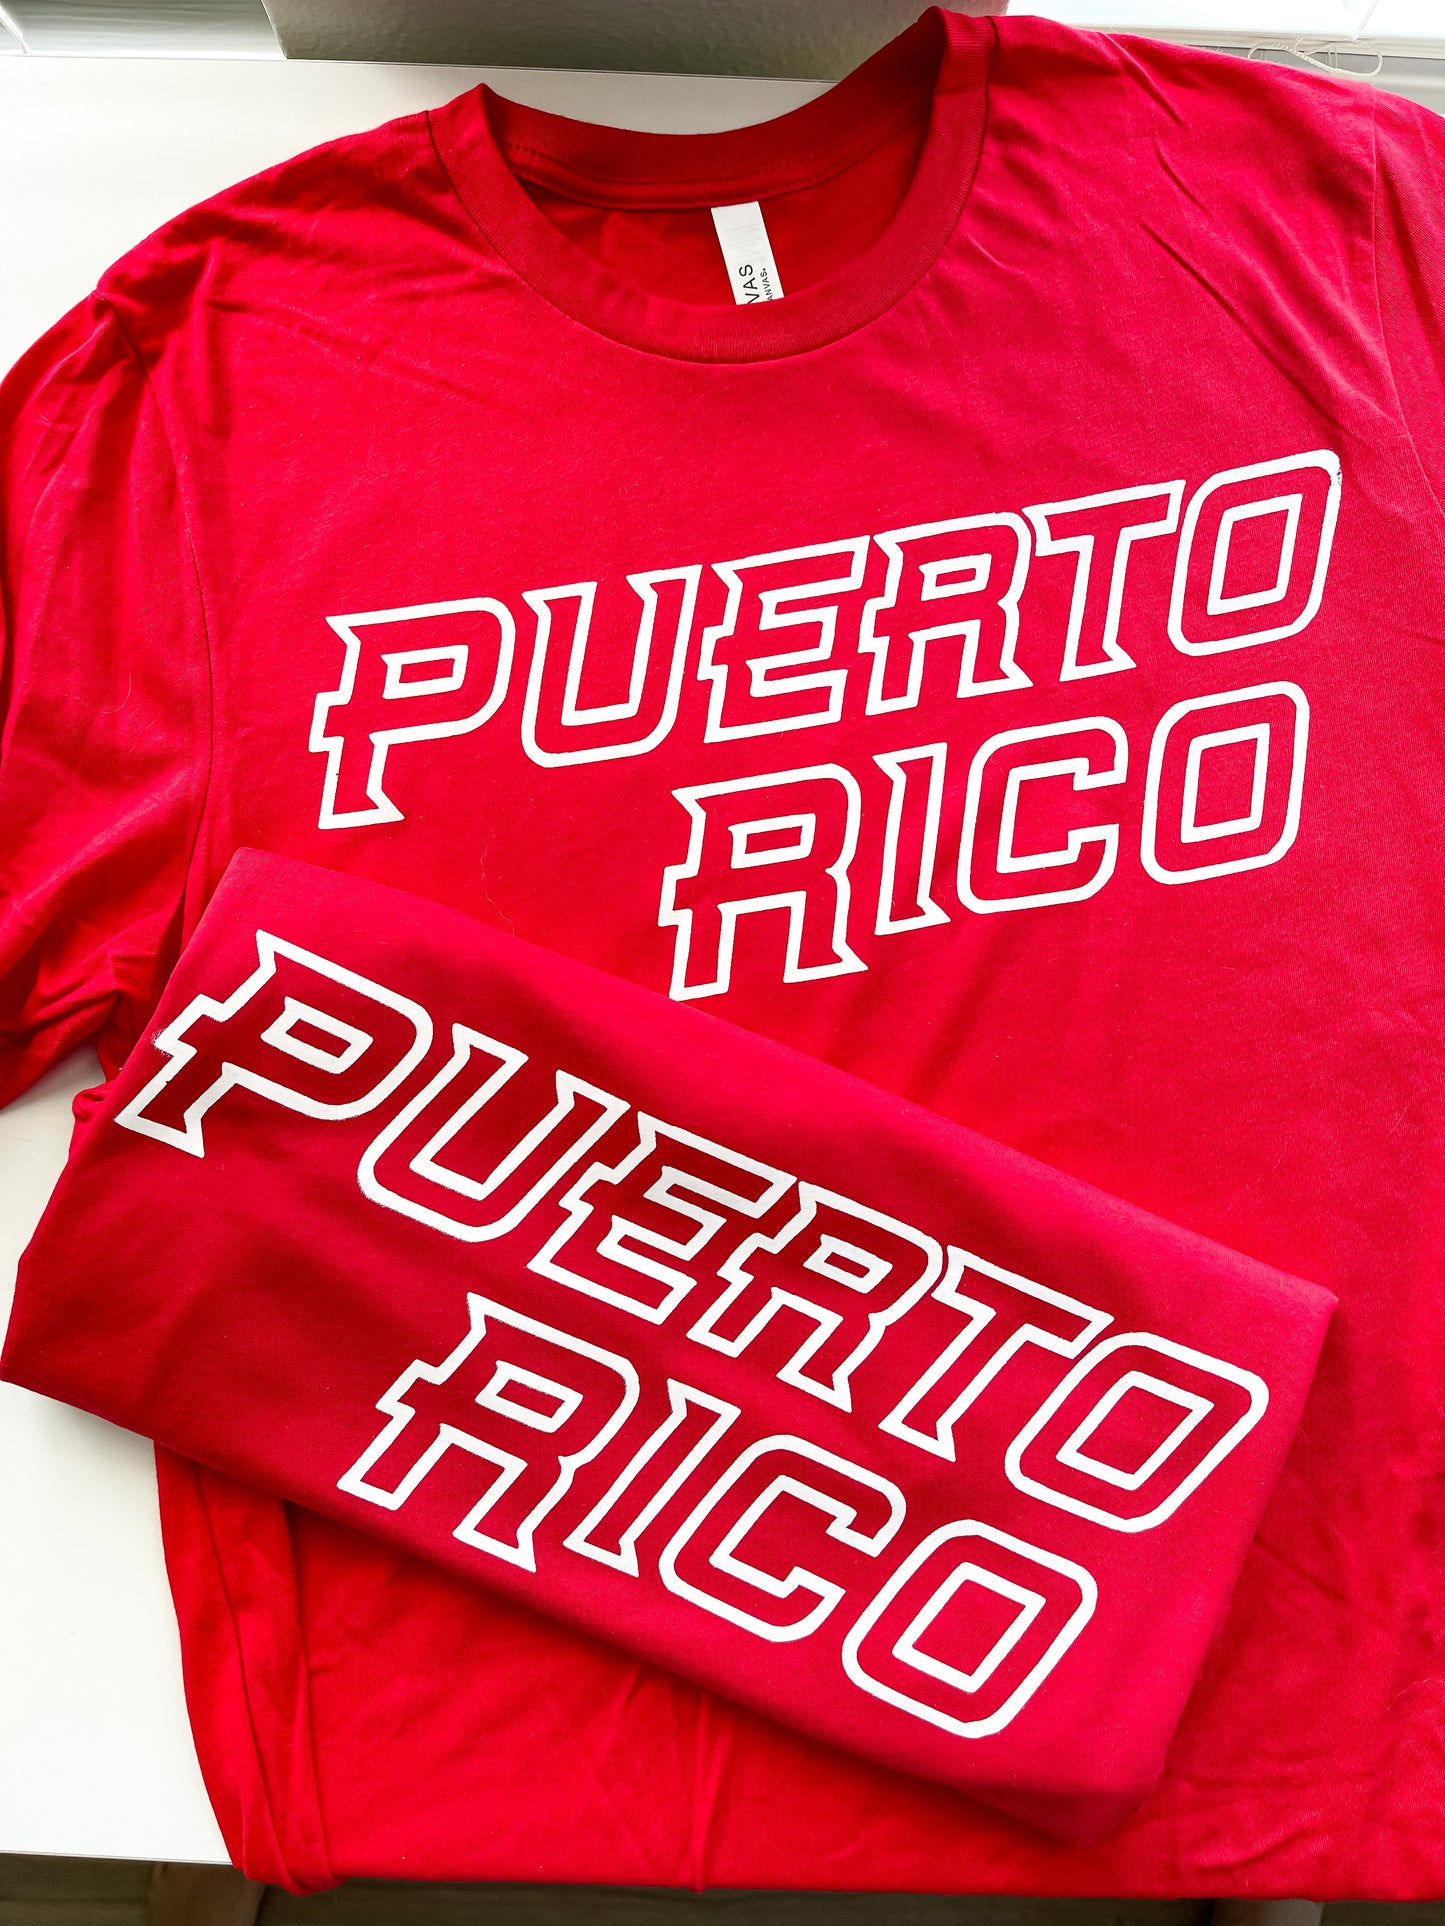 Puerto Rico Boricua Shirt